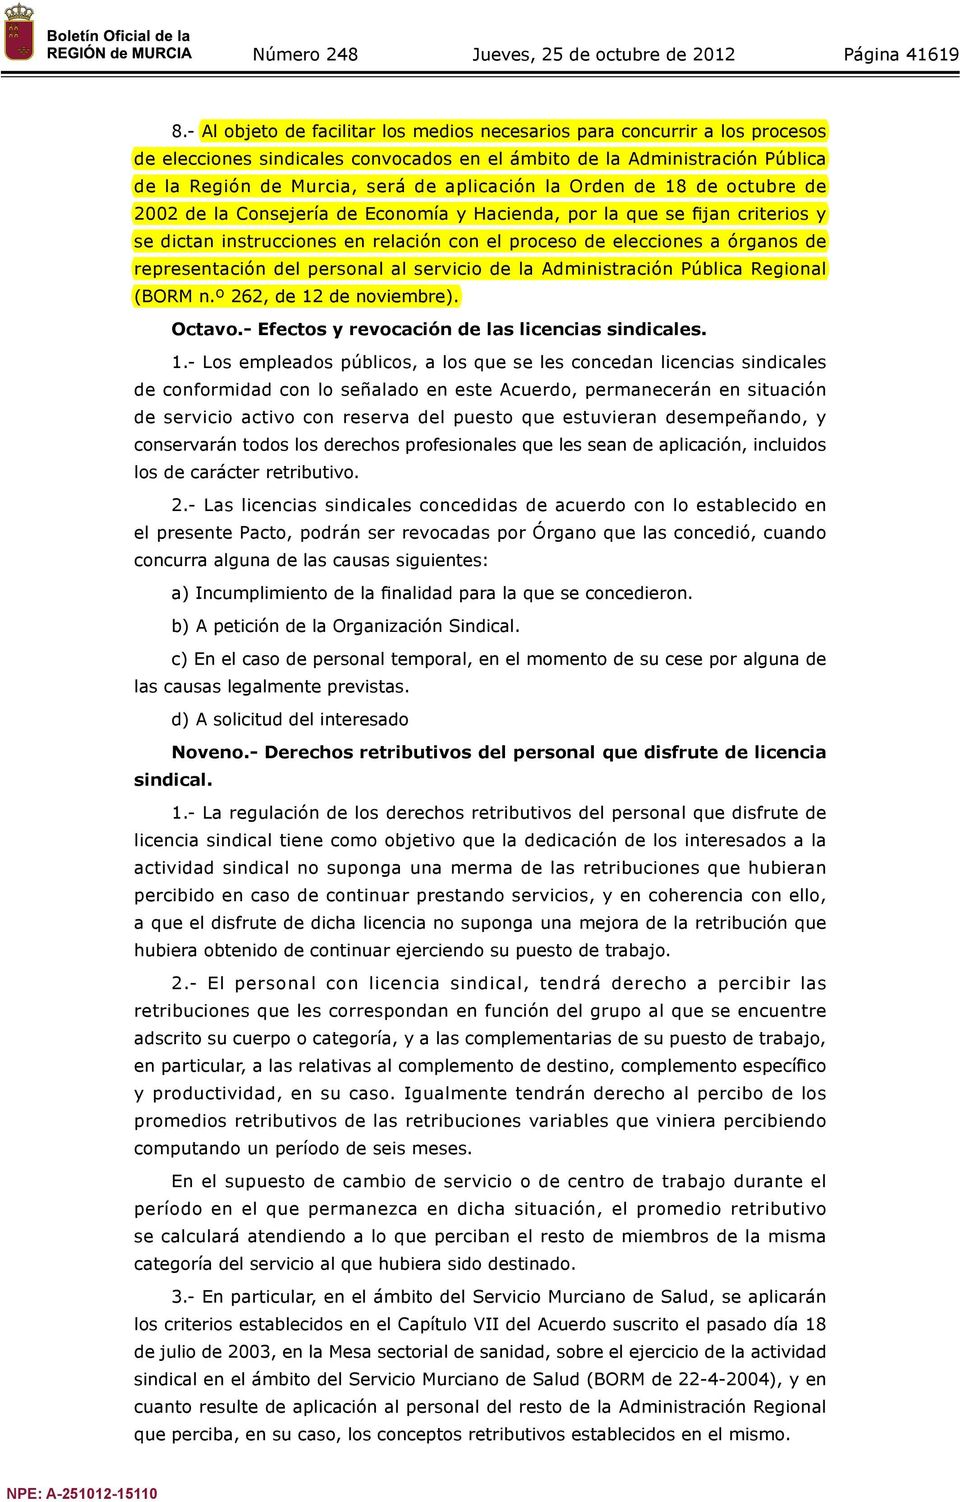 la Orden de 18 de octubre de 2002 de la Consejería de Economía y Hacienda, por la que se fijan criterios y se dictan instrucciones en relación con el proceso de elecciones a órganos de representación